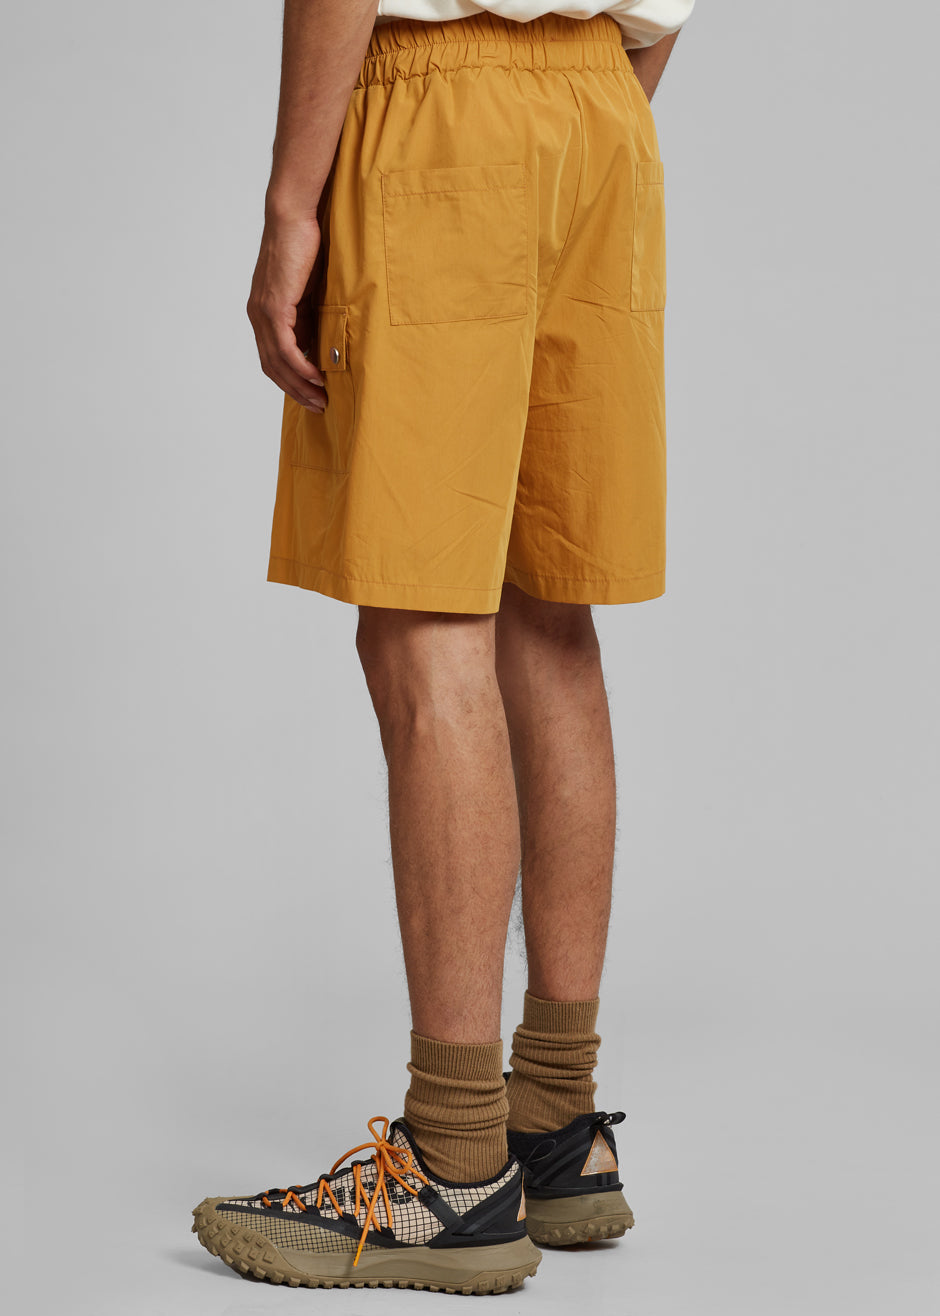 Spence Nylon Shorts - Orange - 7